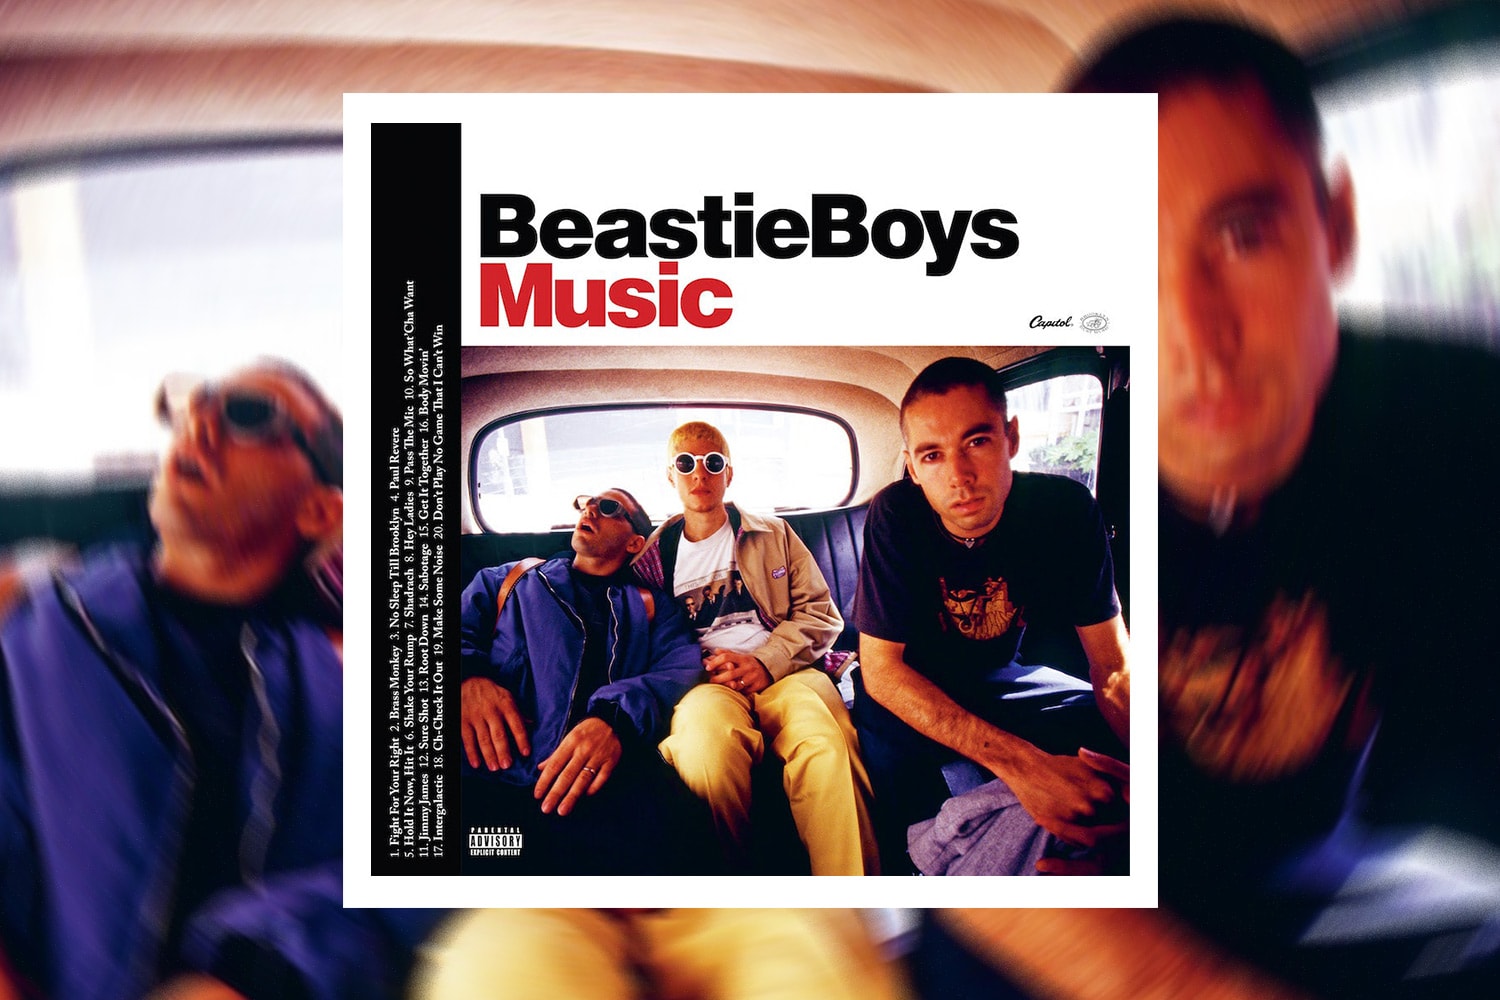 ビースティ・ボーイズの新ベスト盤『ビースティ・ボーイズ ミュージック』がリリース Beastie Boys Announce New Greatest Hits Album